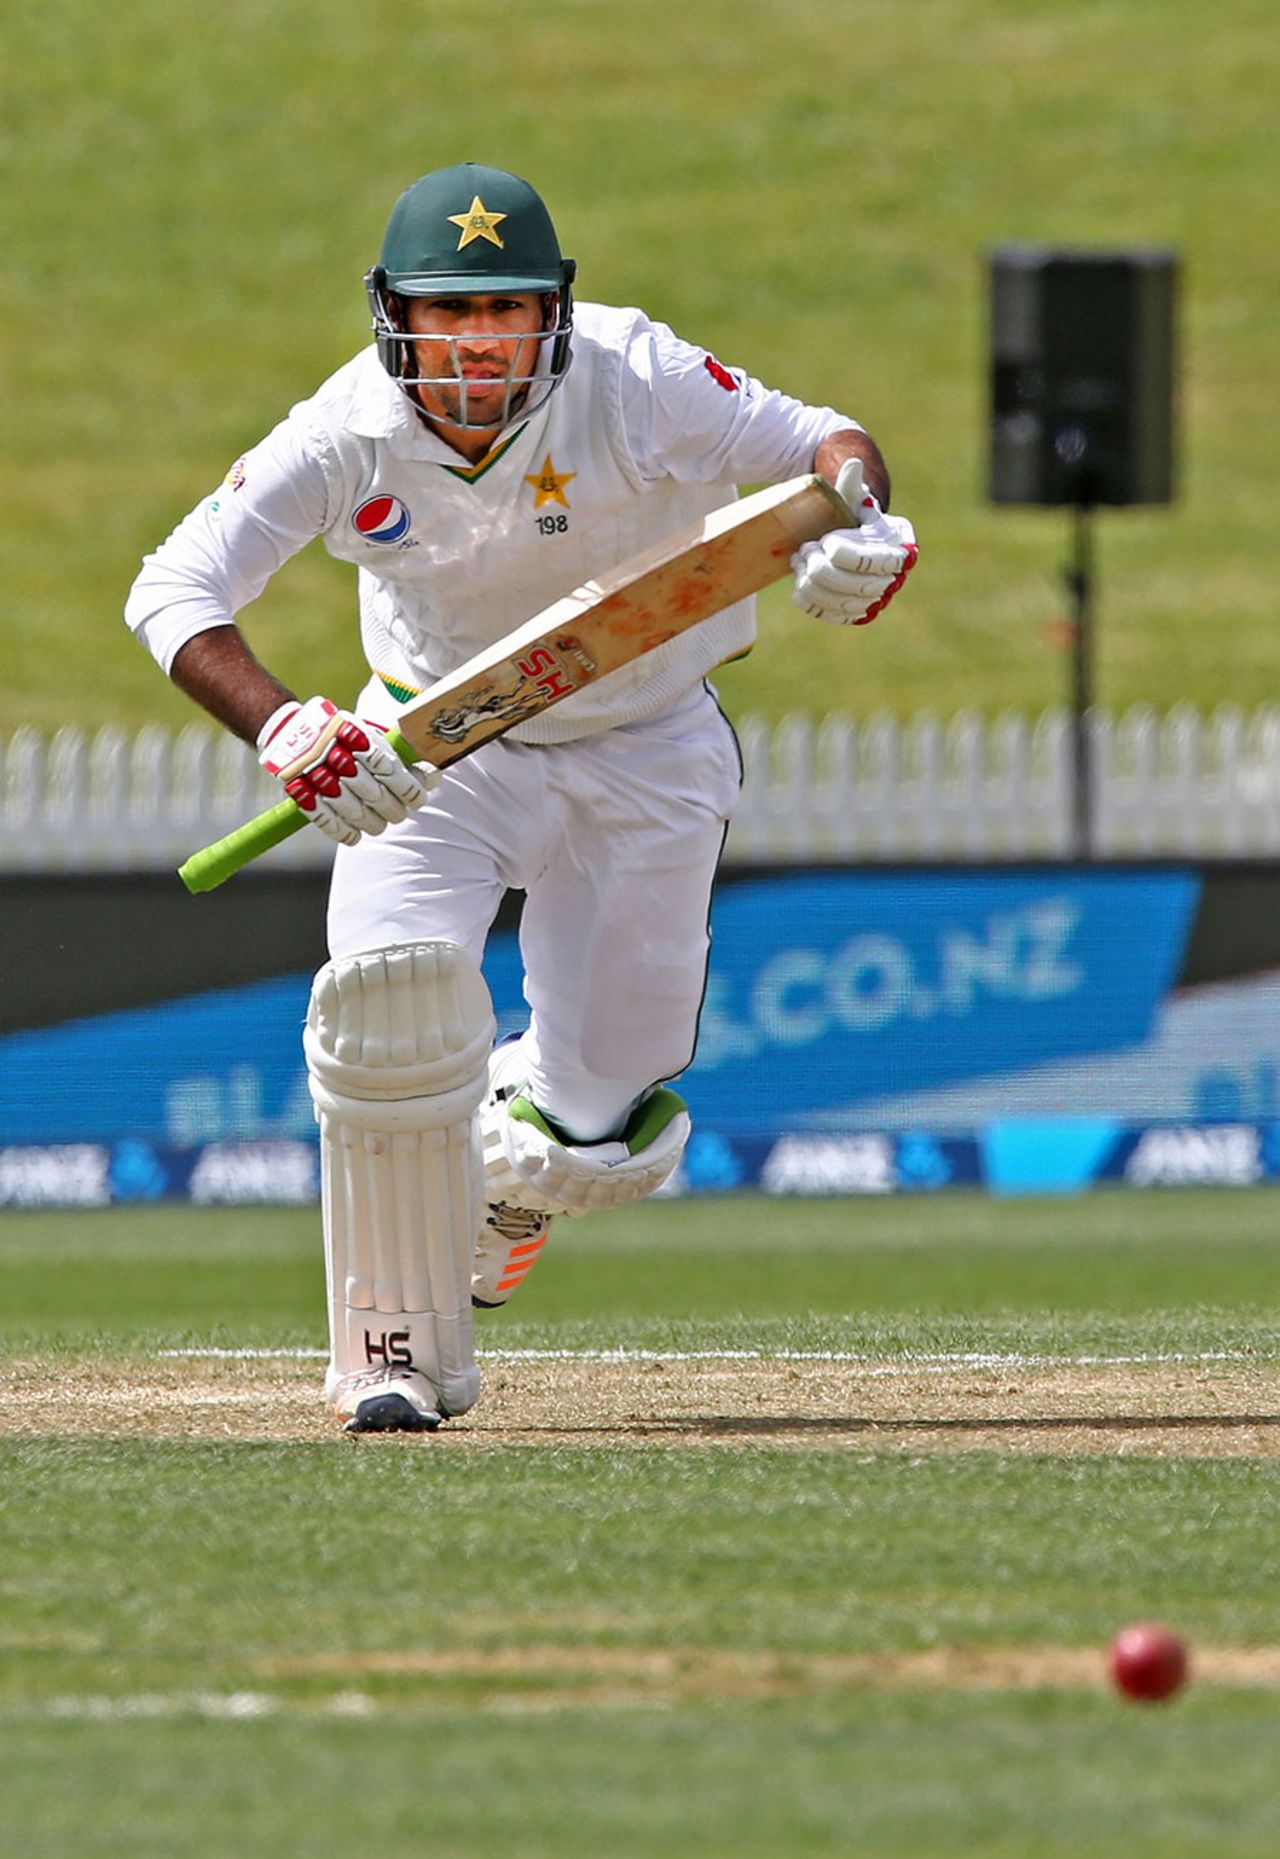 Sarfraz Ahmed scored 41 off 44 balls, New Zealand v Pakistan, 2nd Test, Hamilton, 3rd day, November 27, 2016